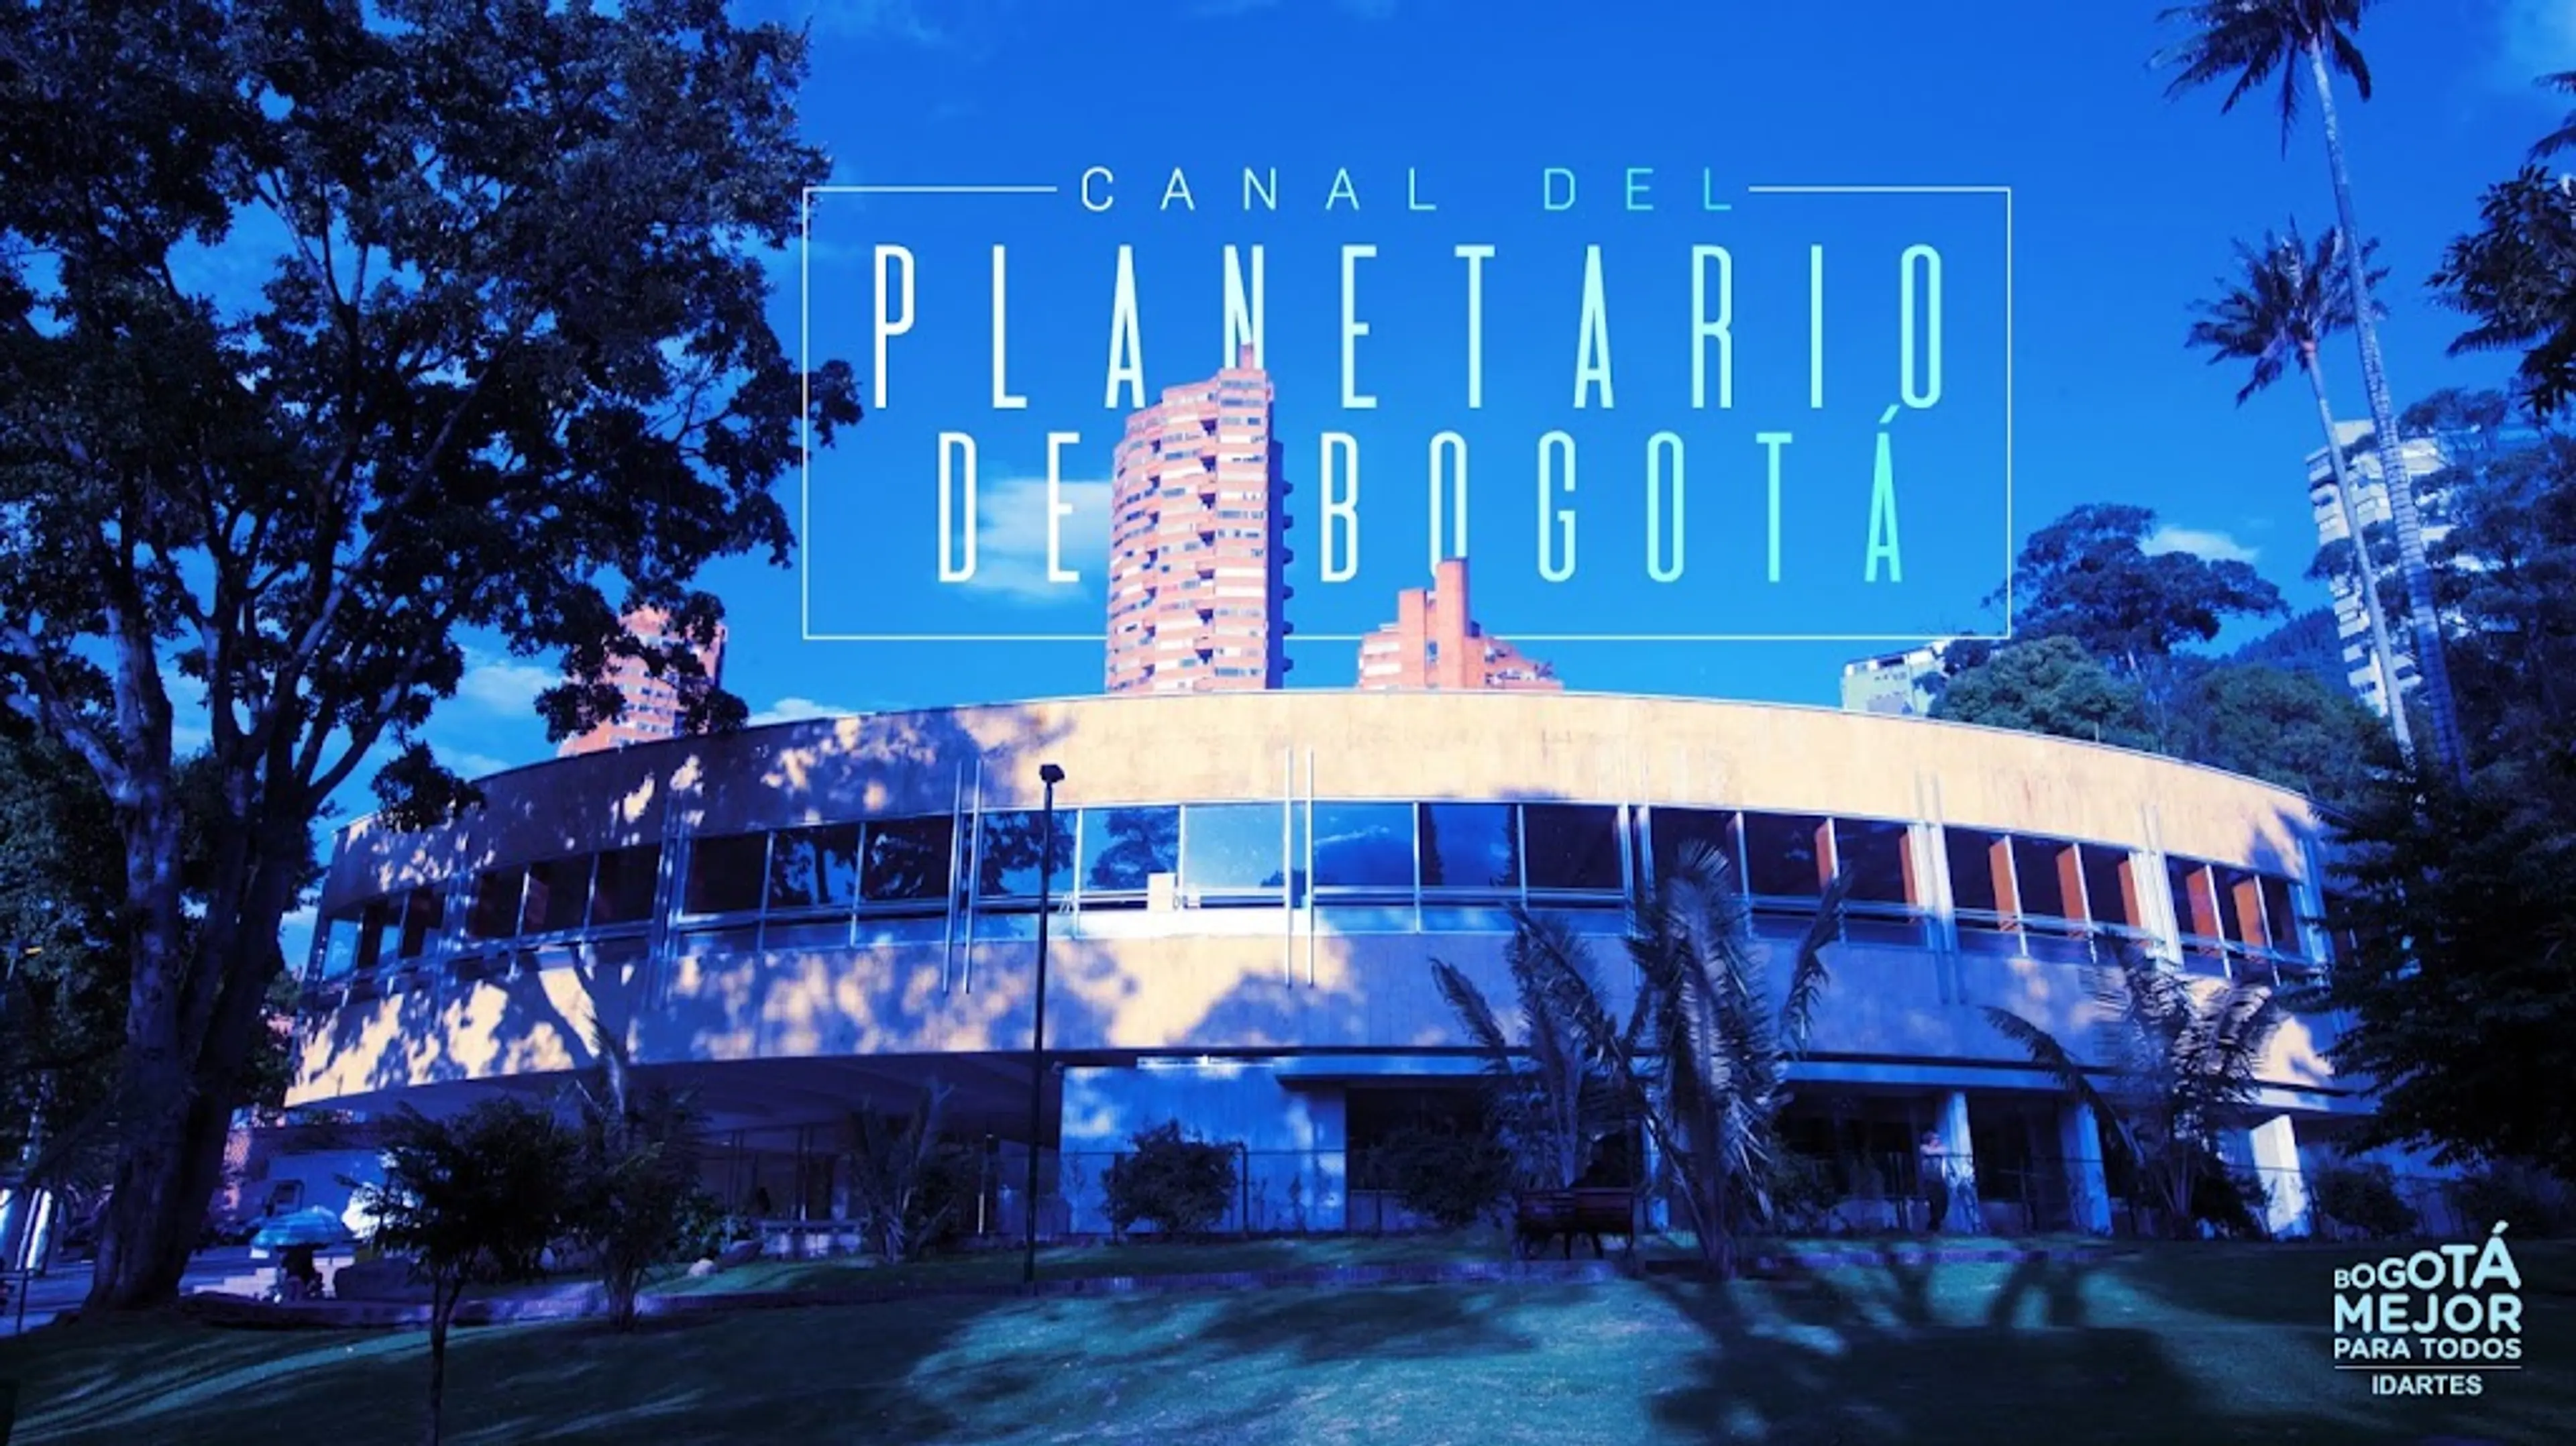 Bogota Planetarium